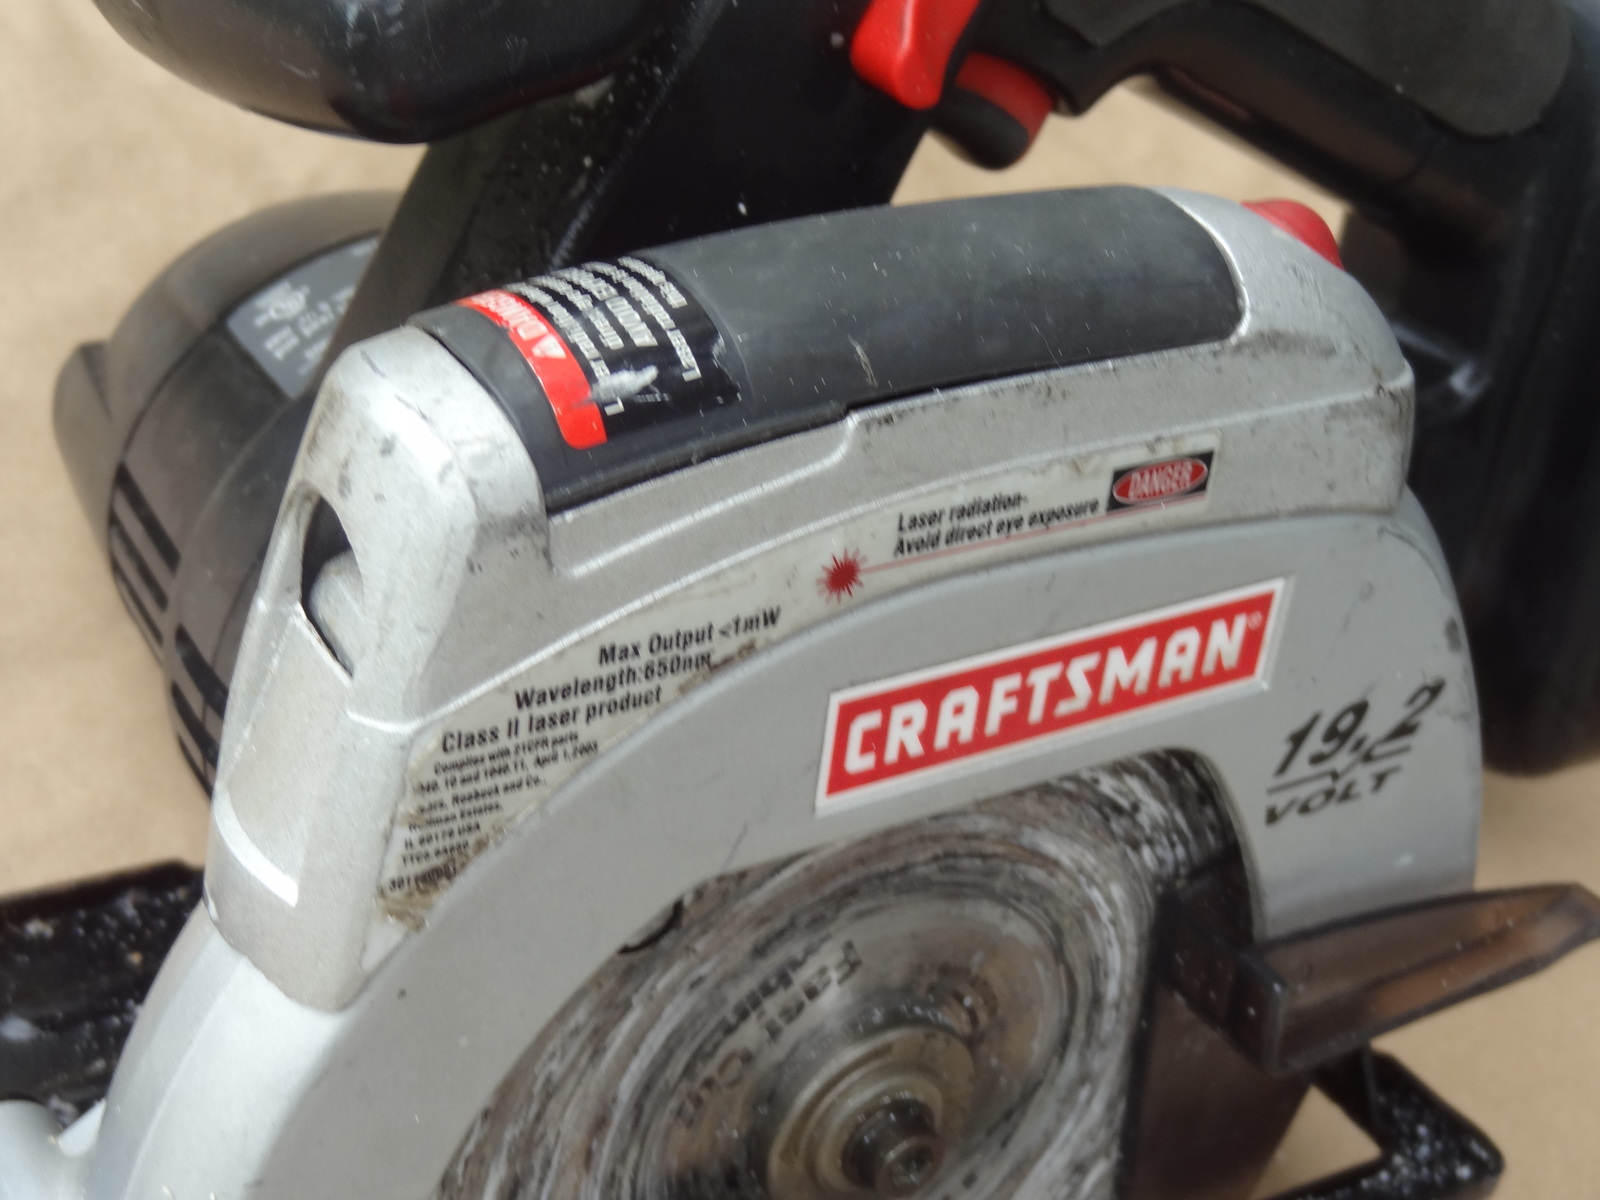 Craftsman 19.2V Circular Saw Cordless Bare and 50 similar items